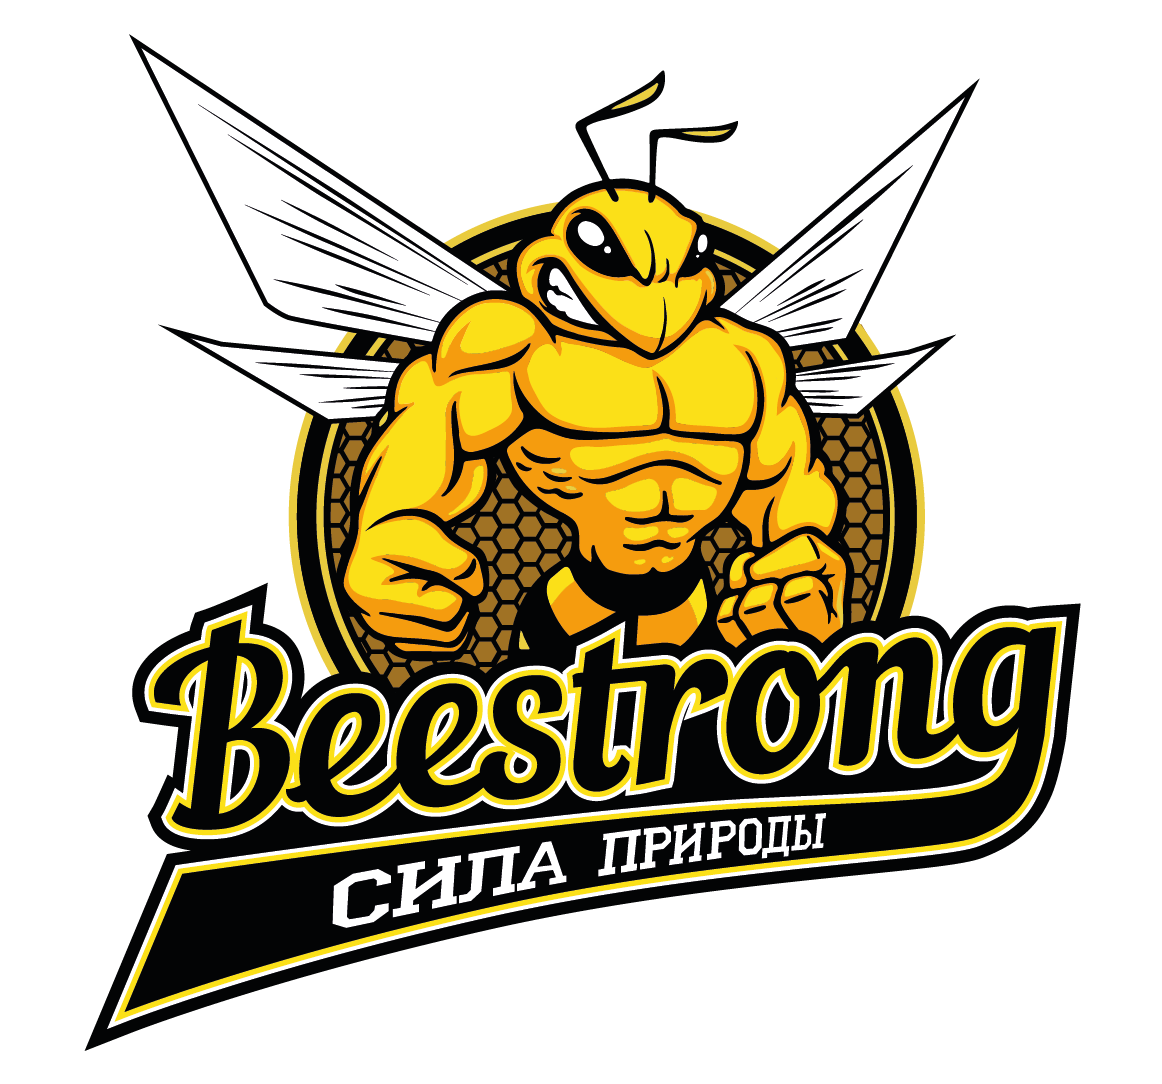 Beestrong - Сила природы!